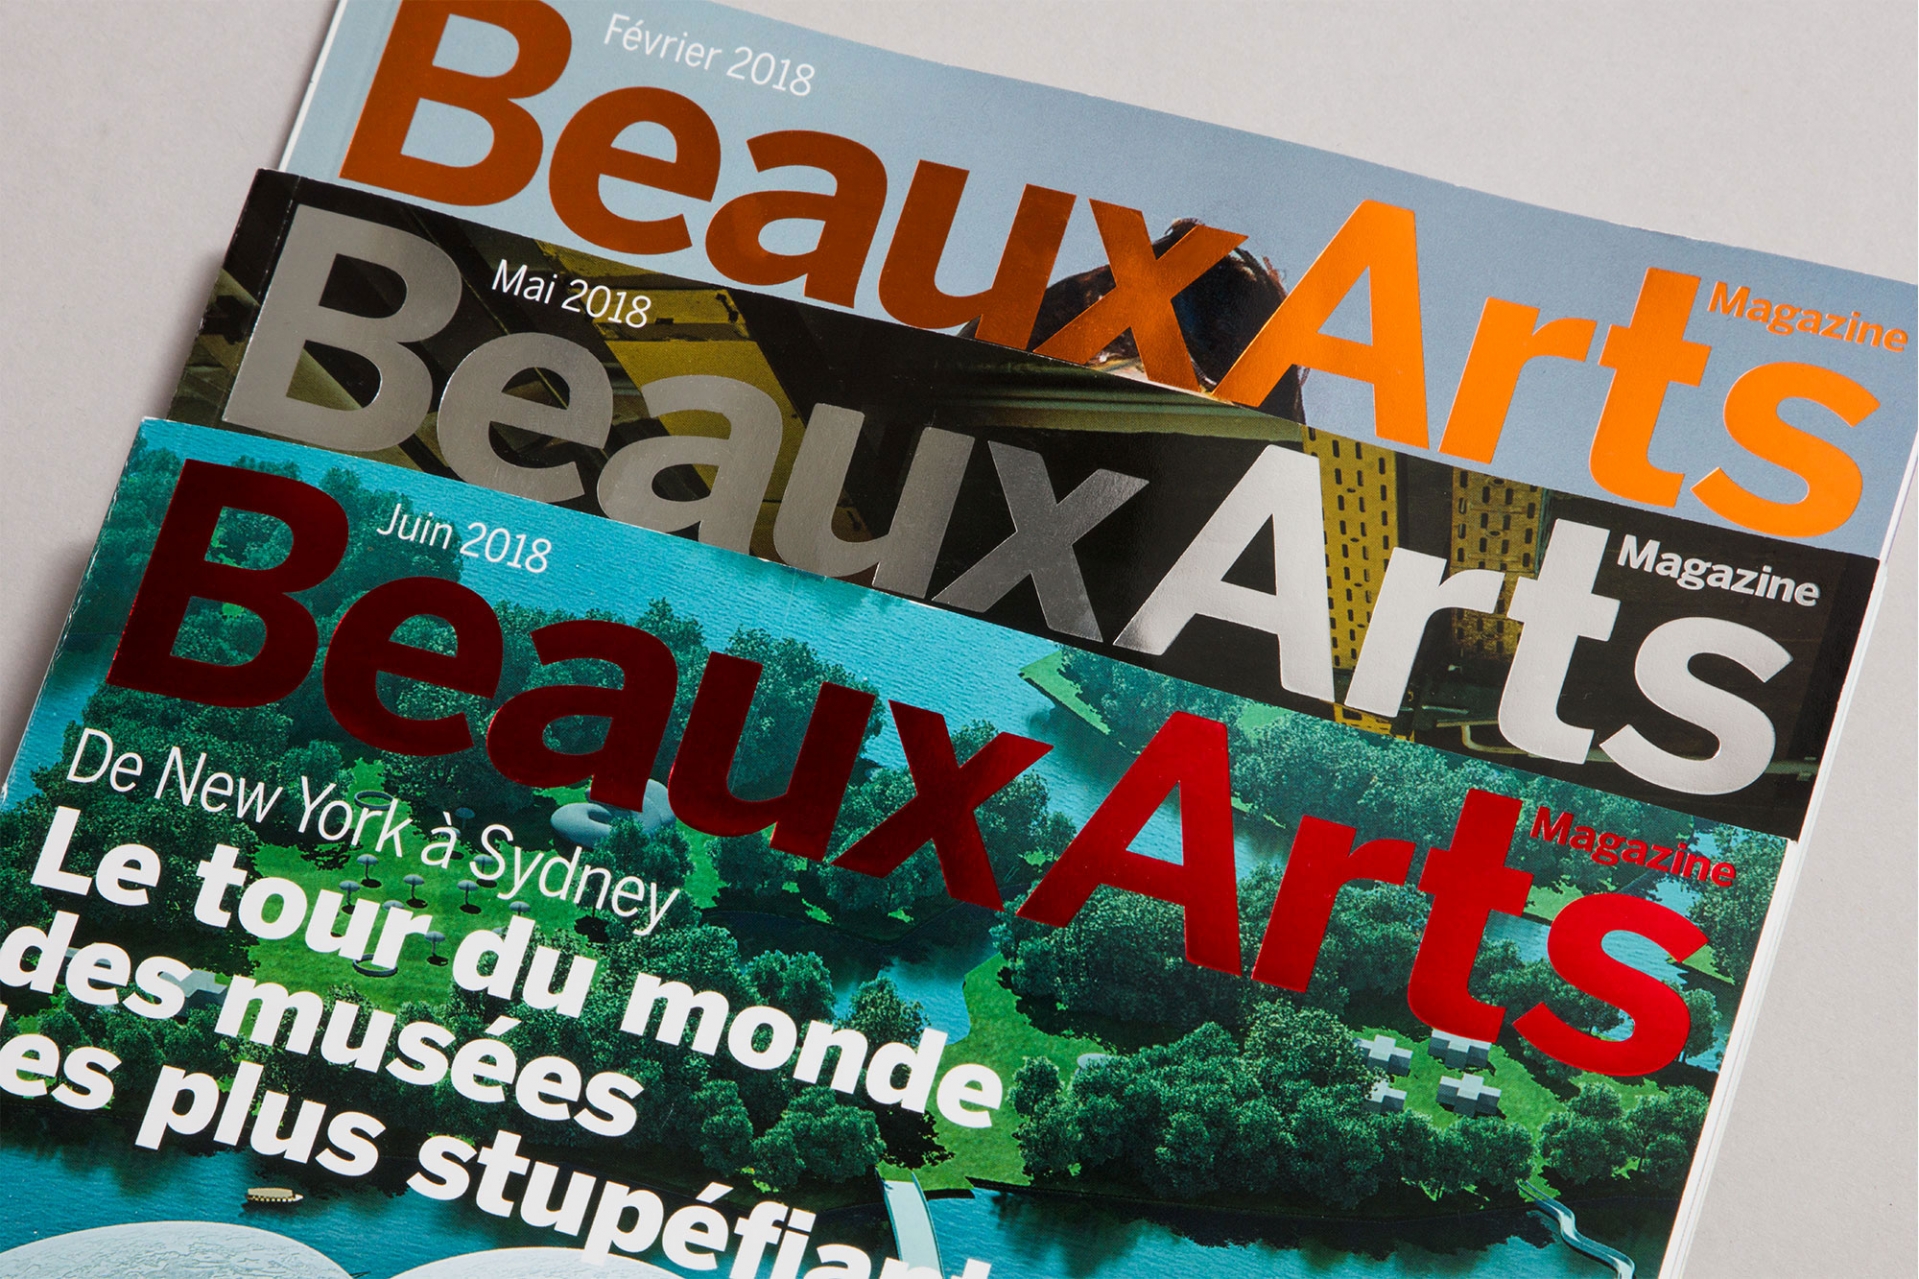 Beaux Arts magazine